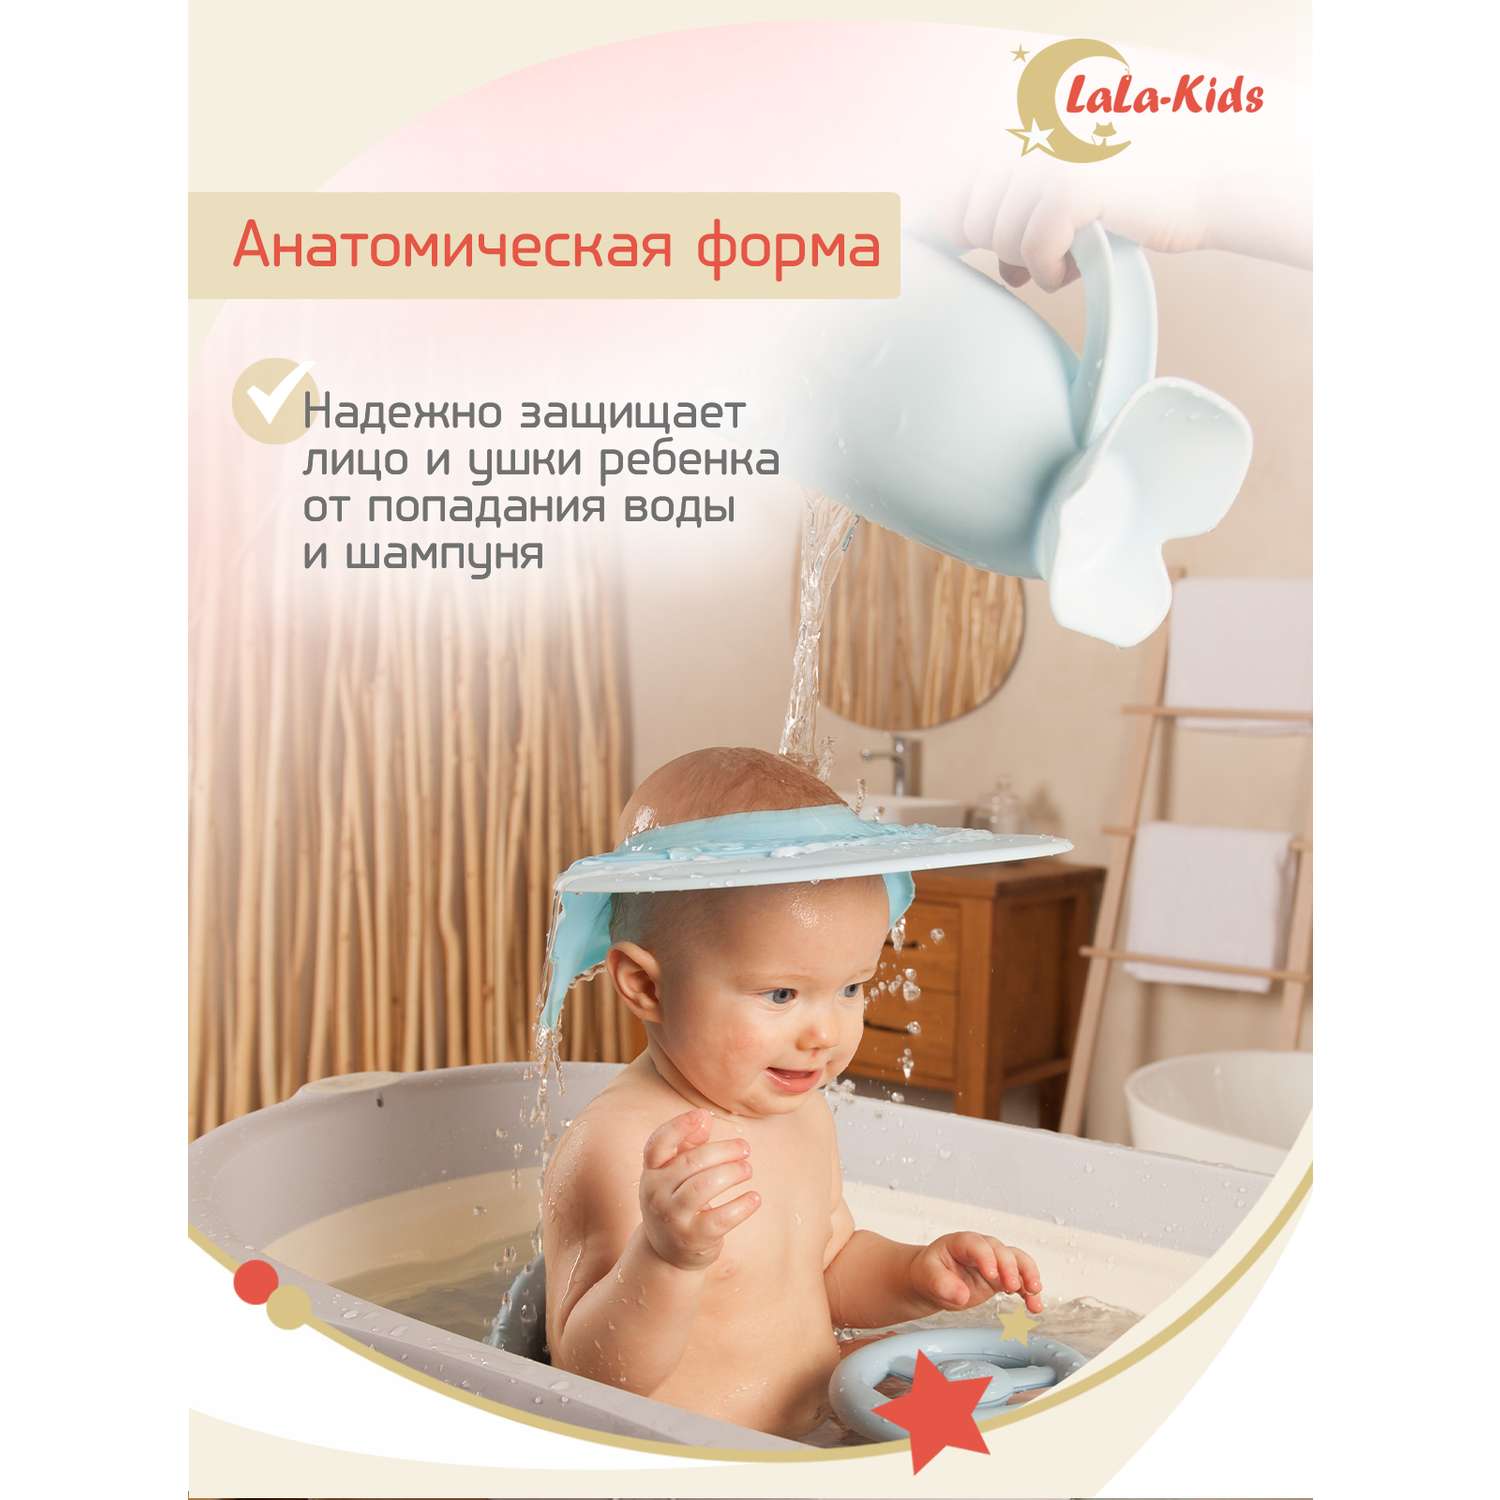 Козырек LaLa-Kids для мытья головы анатомический голубой - фото 4